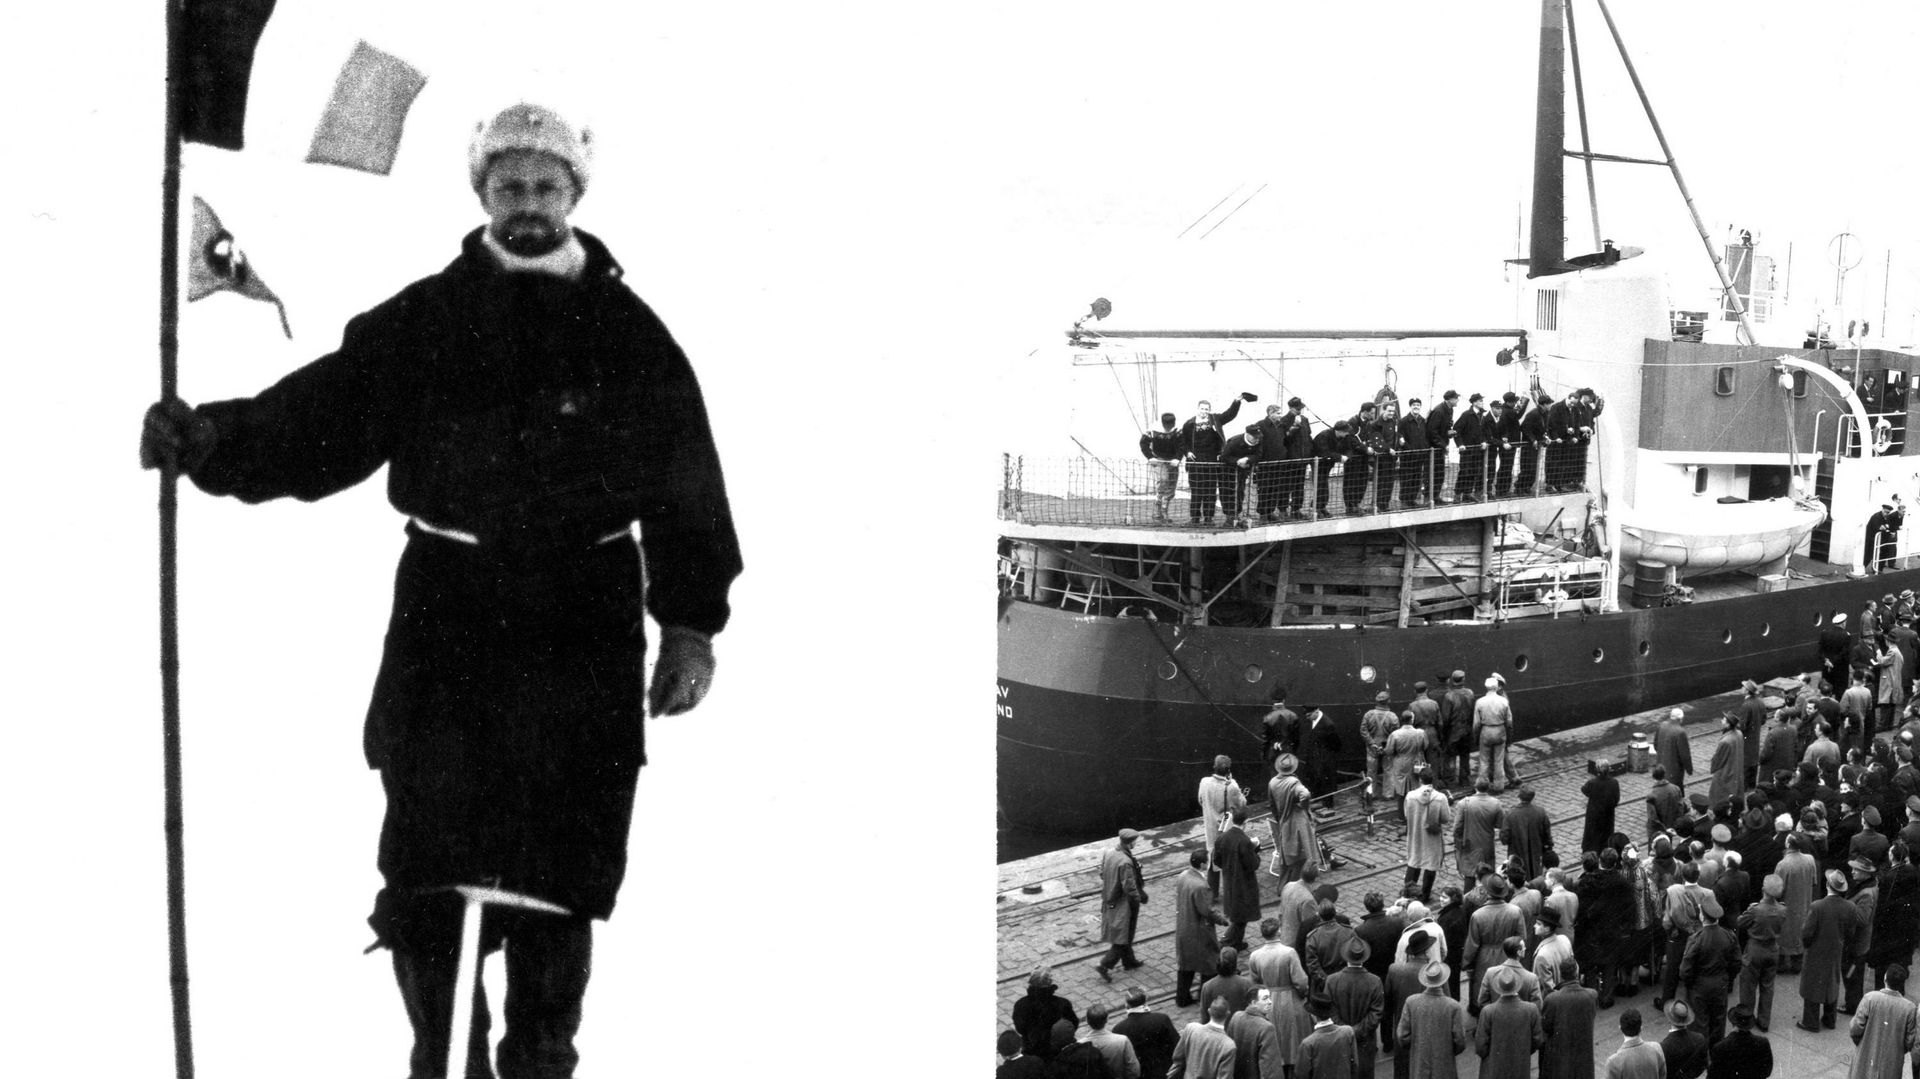 L'expédition de son grand-père, Adrien, e, Antarctique, eut lieu entre 1897 et 1899